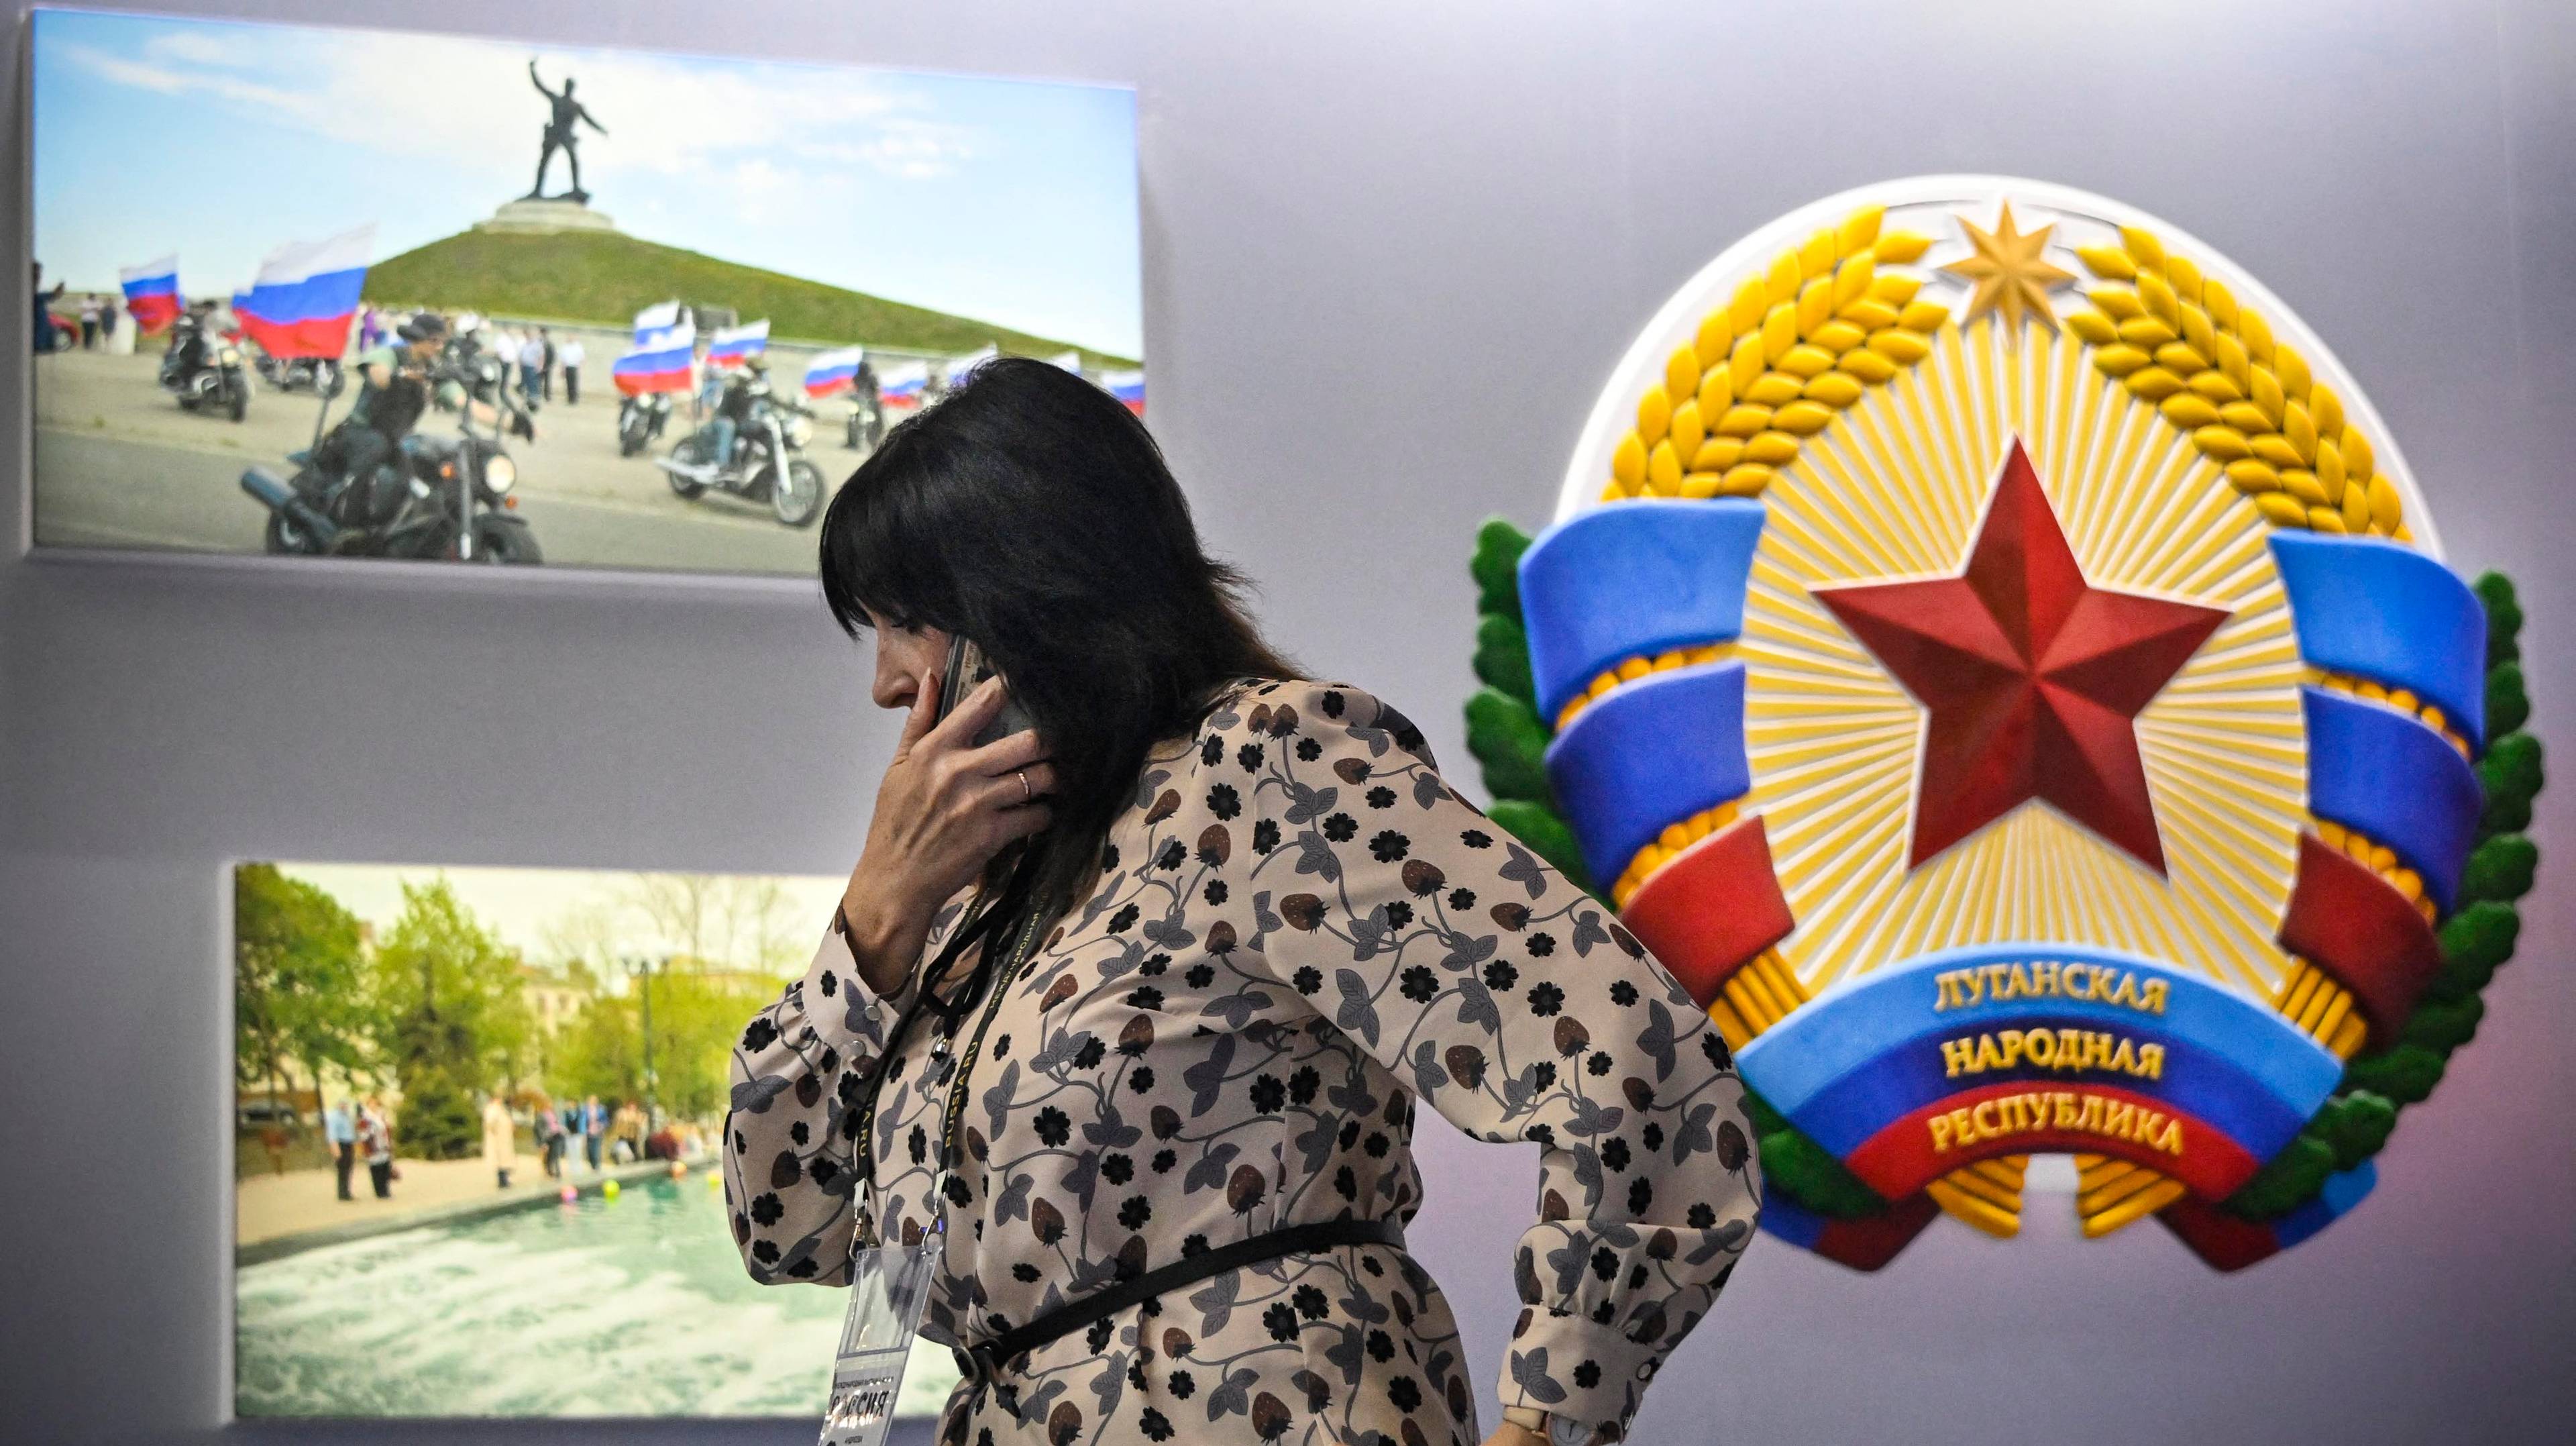 Kobieta rozmawia przez telefon na tle ściany wystawowej, na której wisi godło Ludowej Republiki Ługańskiej z czerwoną gwiazdą oraz zdjecia, przedstawiające rajd motocyklowy i fontannę